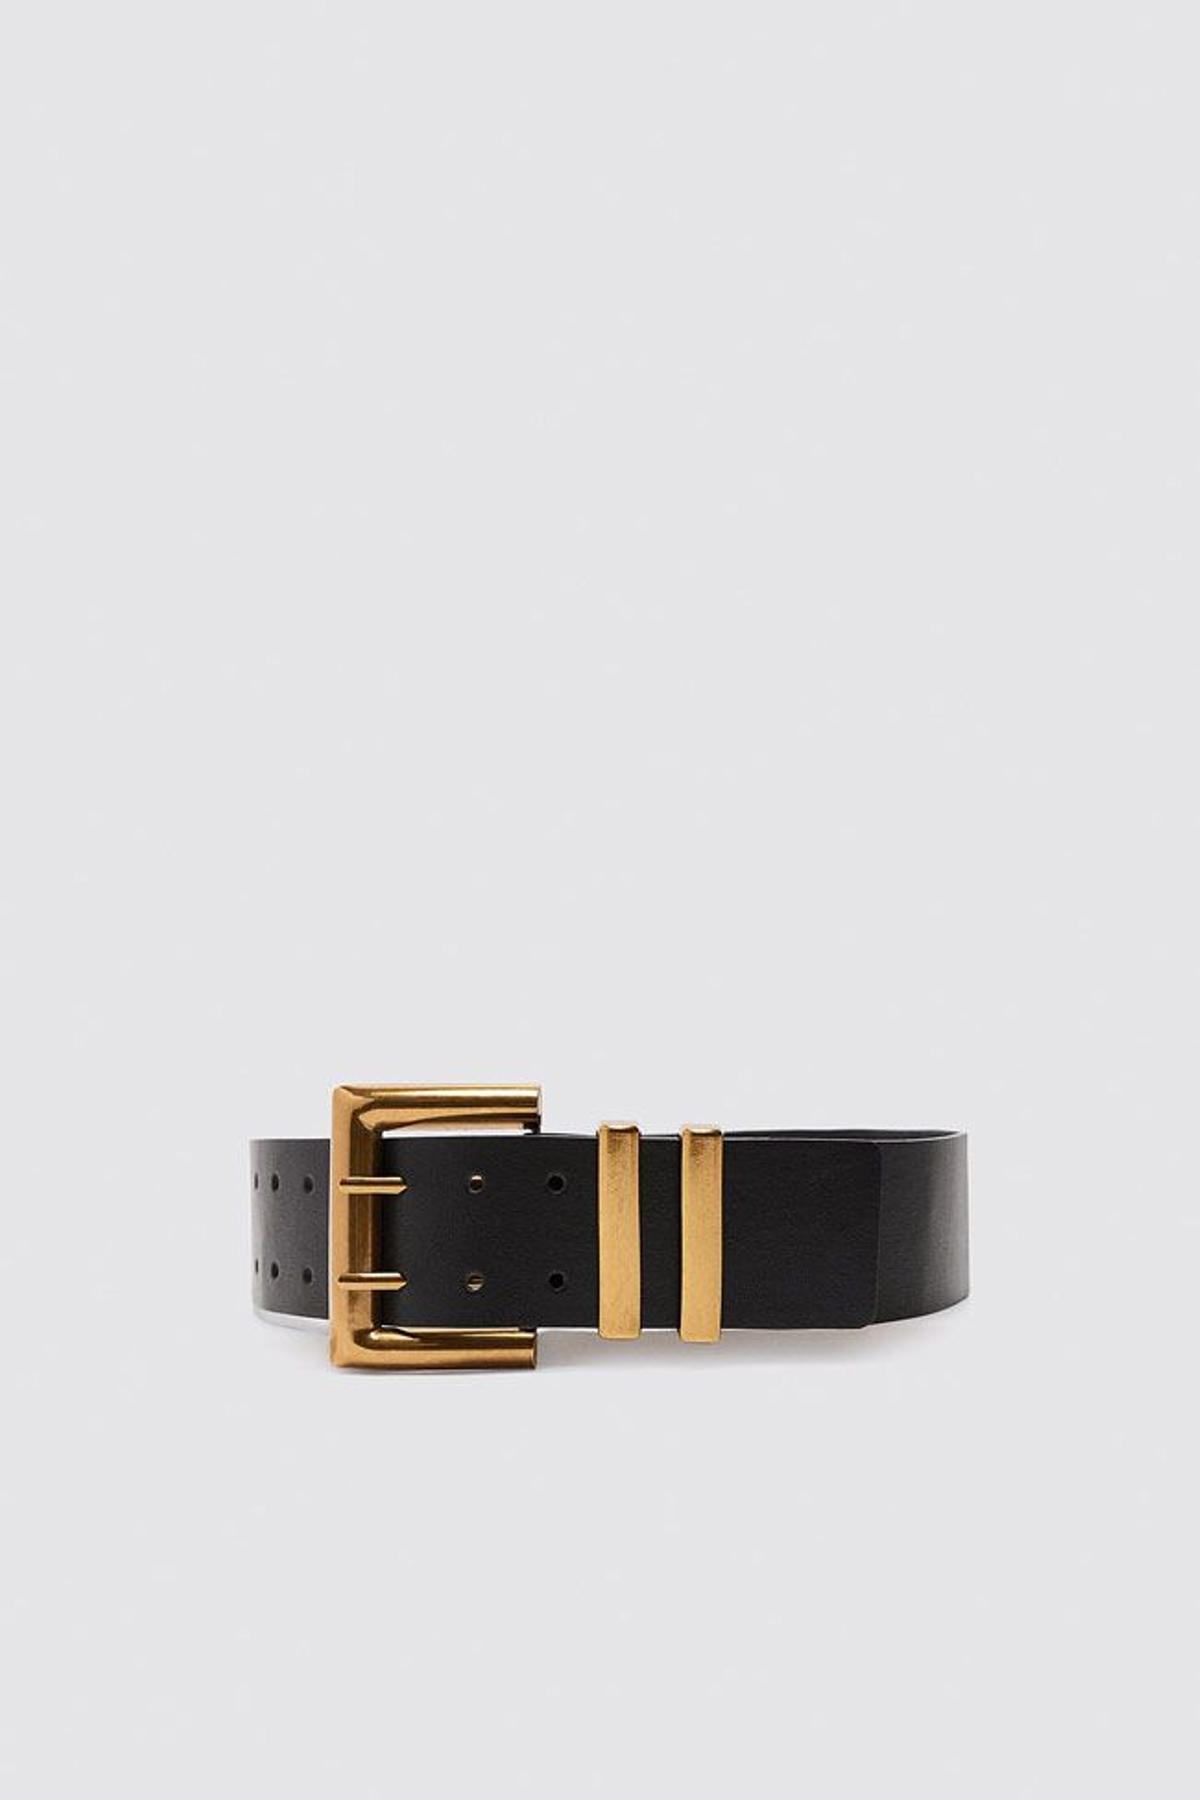 Cinturón negro con hebilla dorada